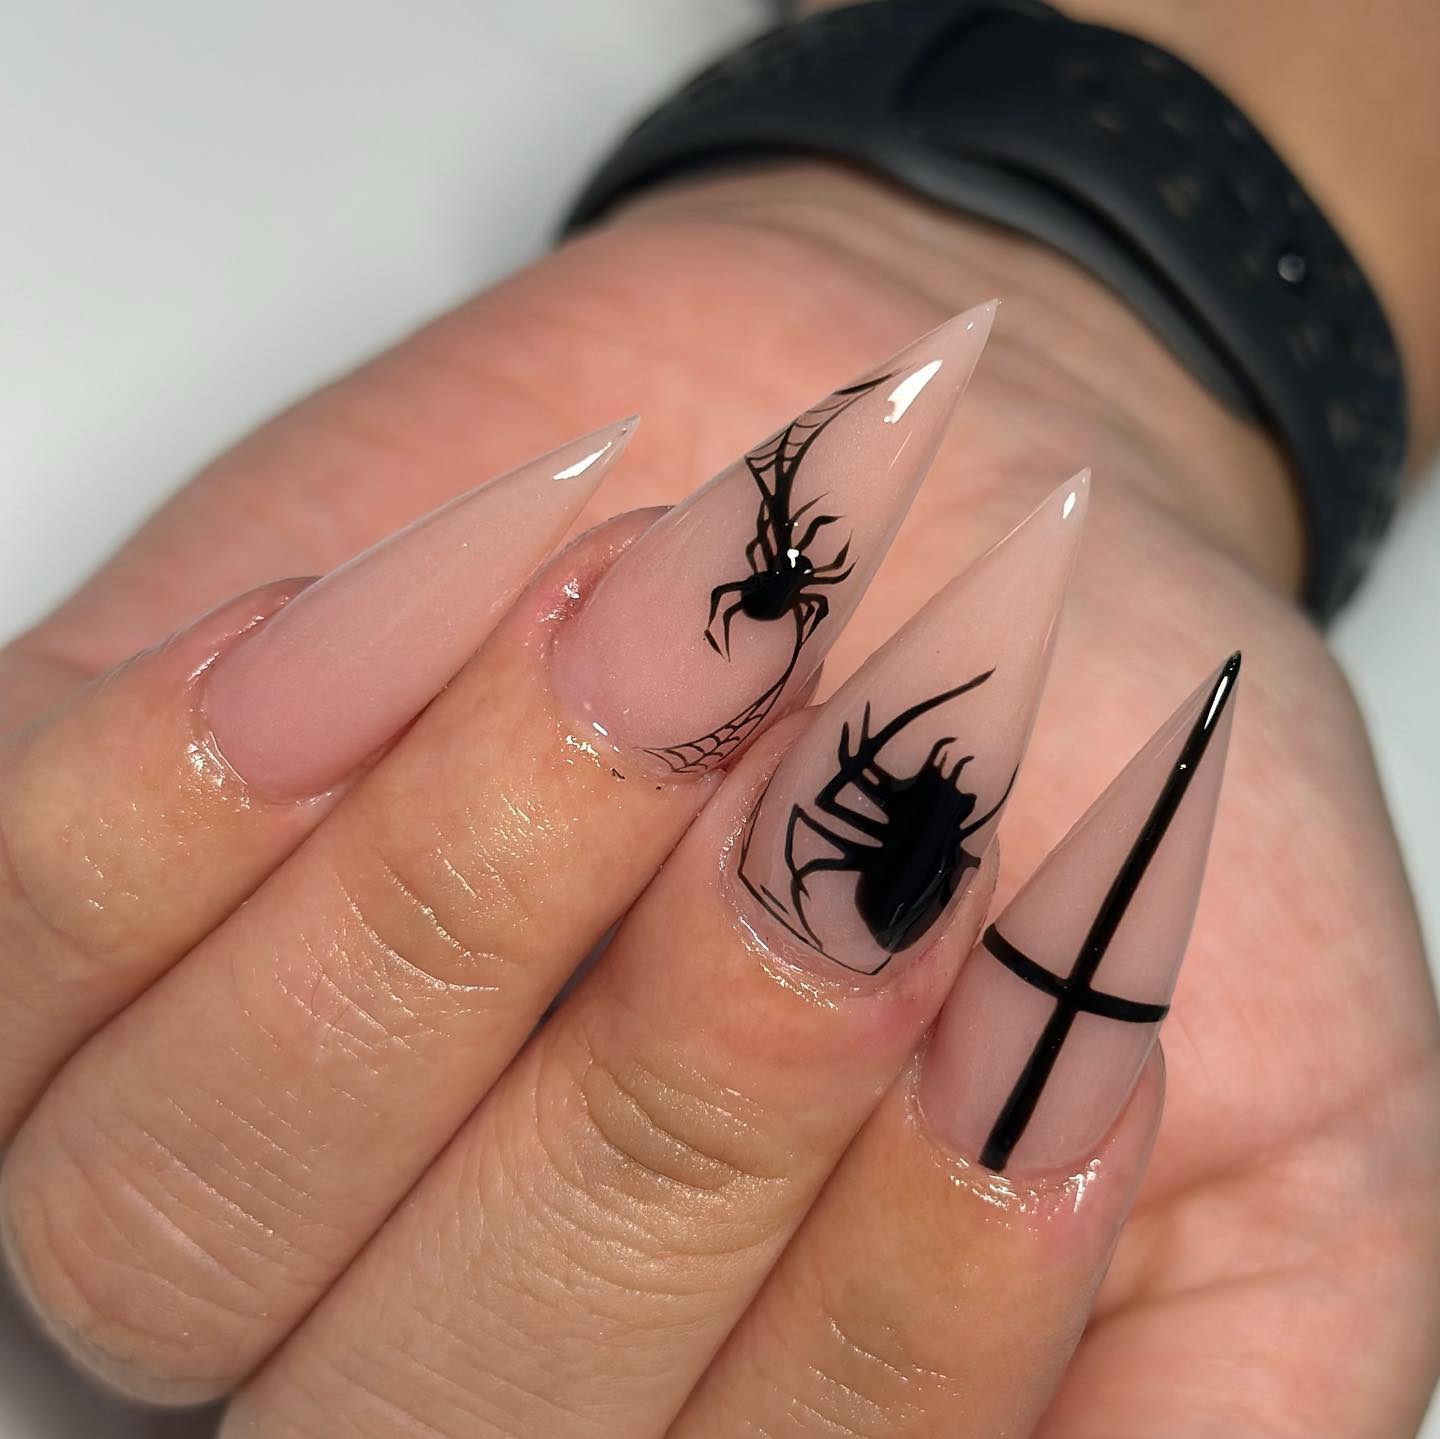 Jeszcze jedno zdjęcie migdałowych paznokci z realistycznymi obrazami pająków